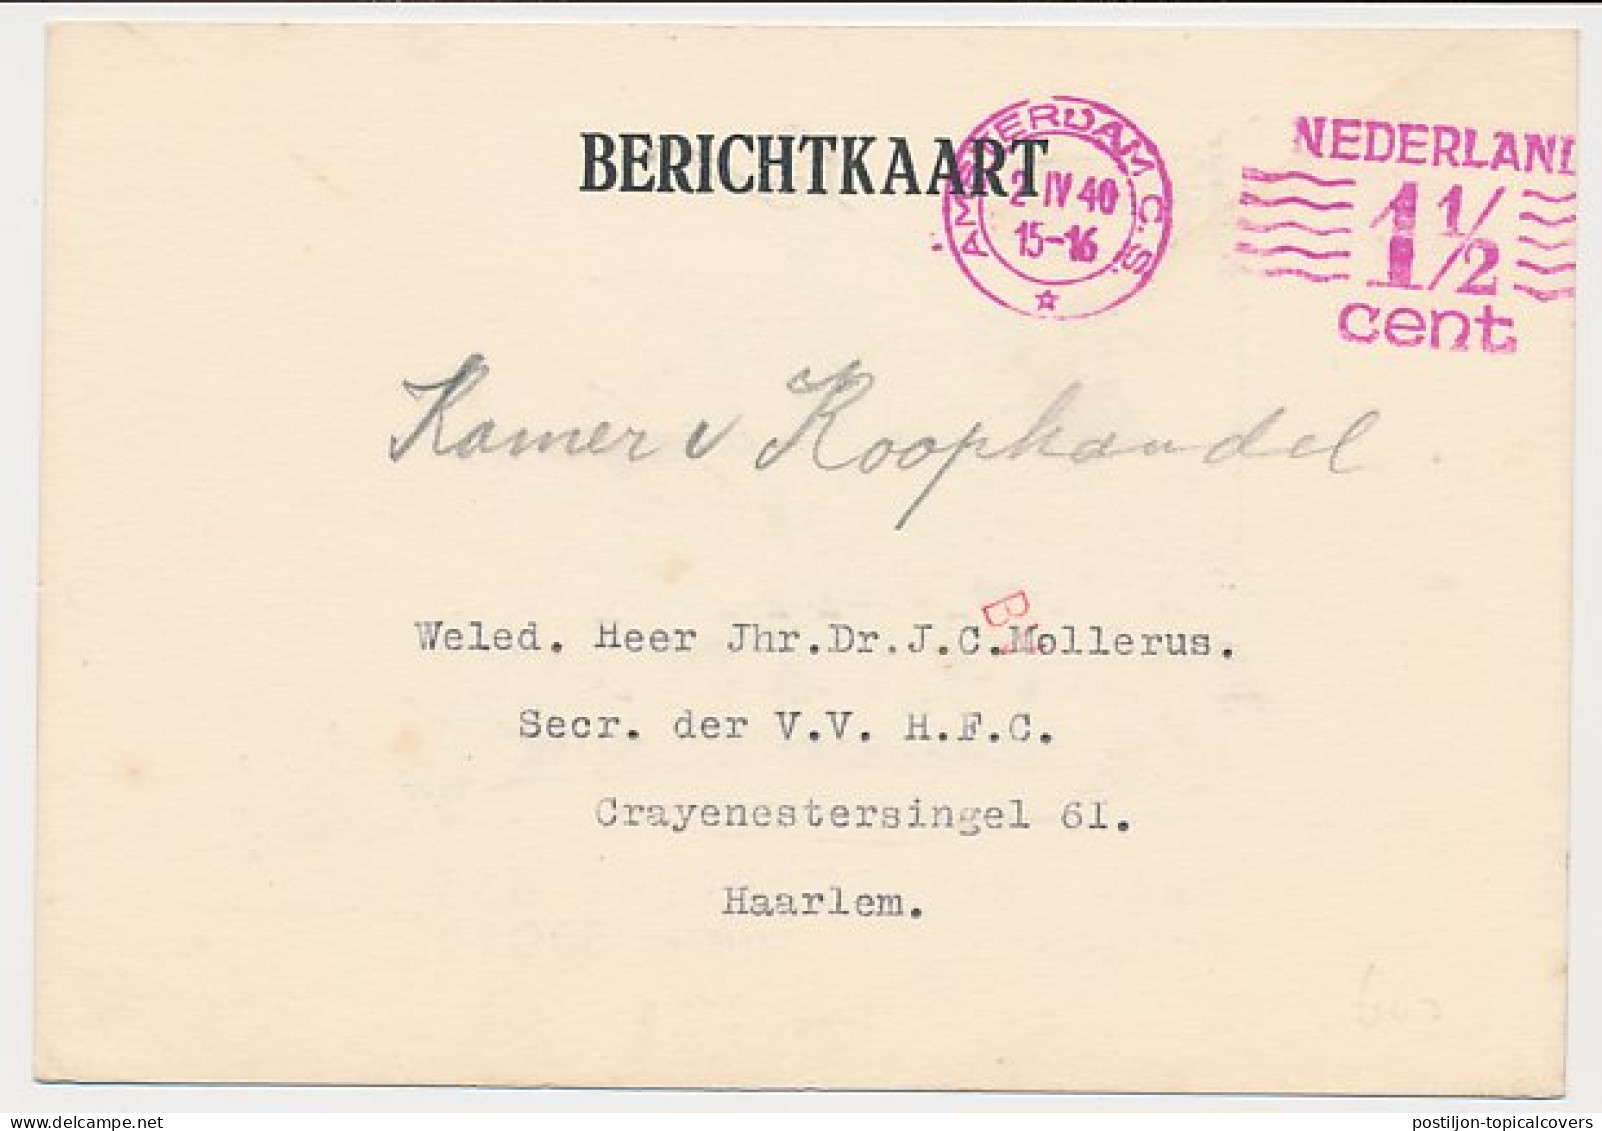 Verhuiskaart Amsterdam 1940 - Saks Theaterbureau - Unclassified